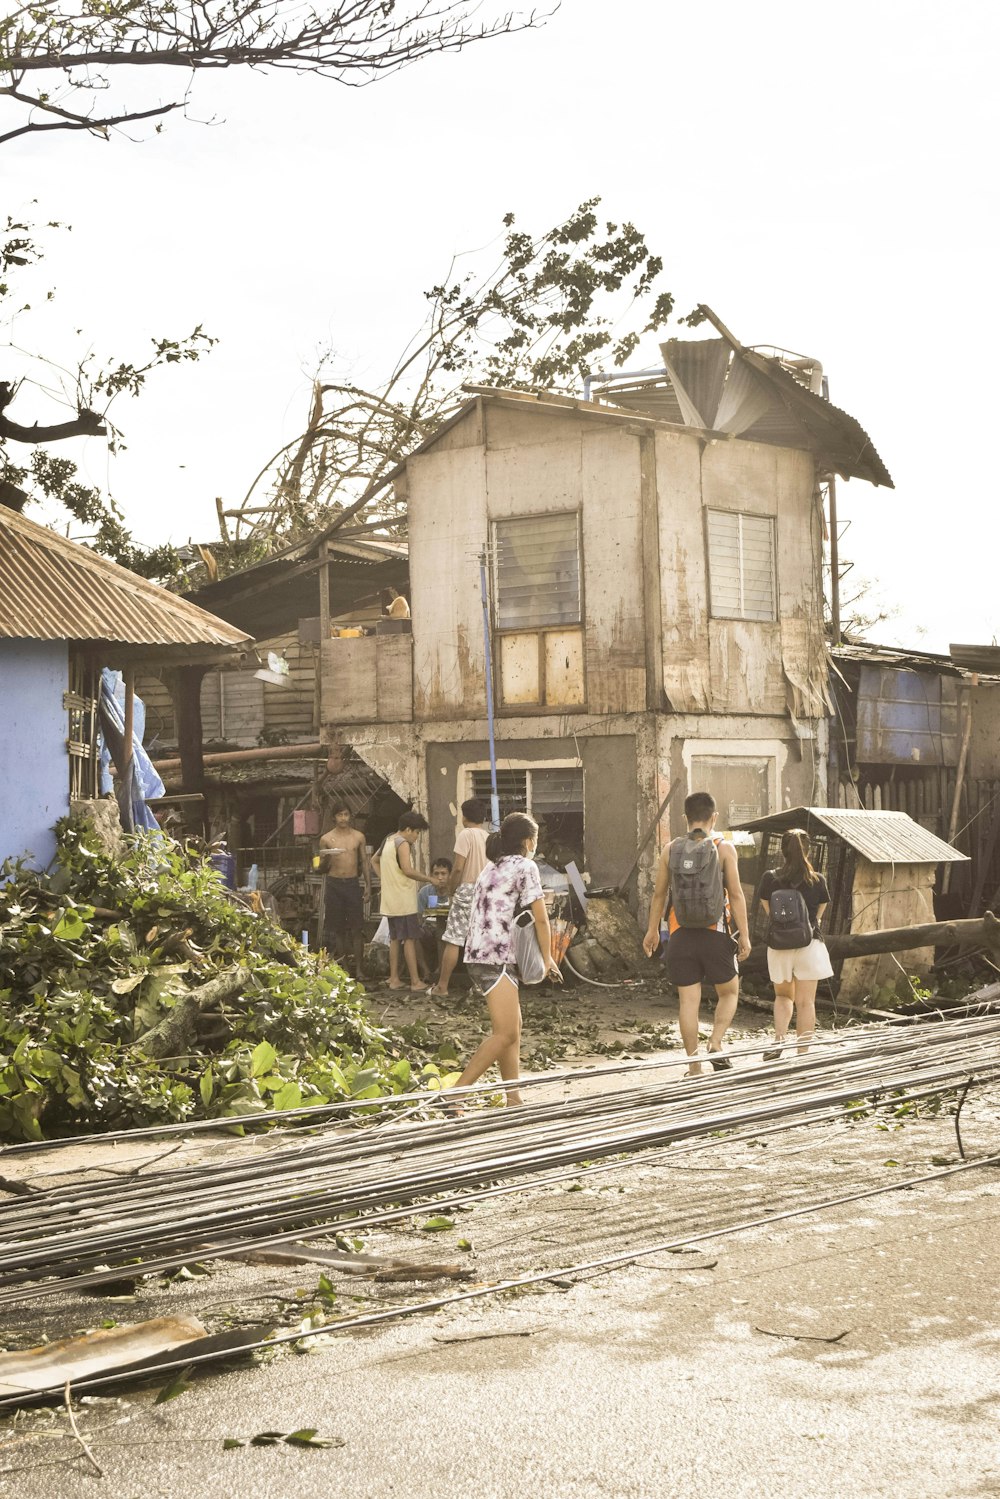 Un groupe de personnes marchant devant une maison délabrée